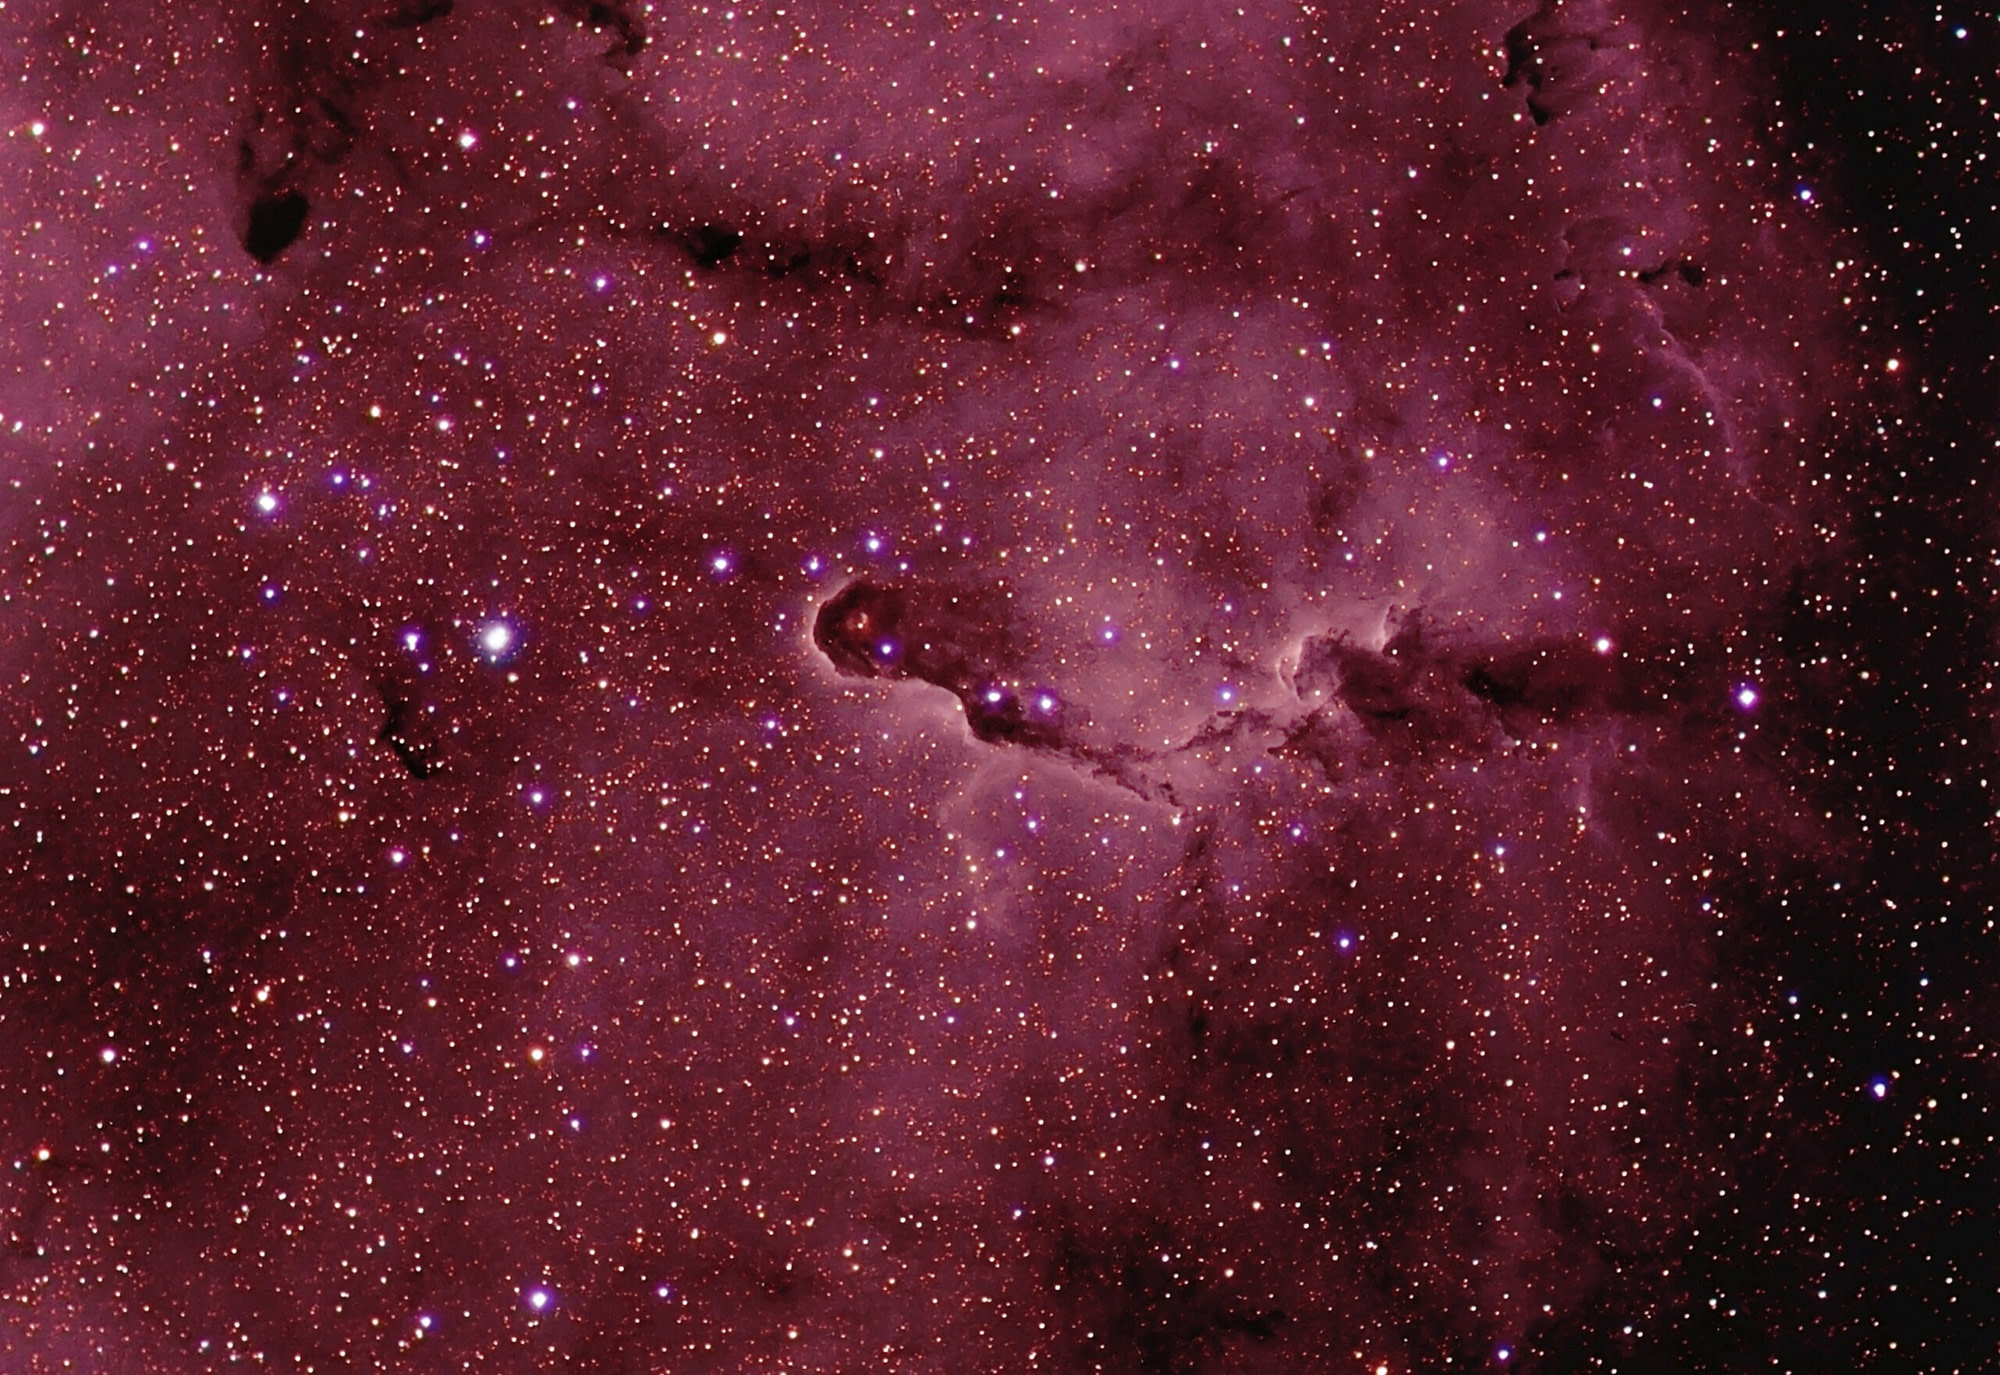 In dunklen, rüsselartigen Strukturen mit hellem Saum im rötlich leuchtenden Emissionsnebel IC1396 entstehen neue Sterne